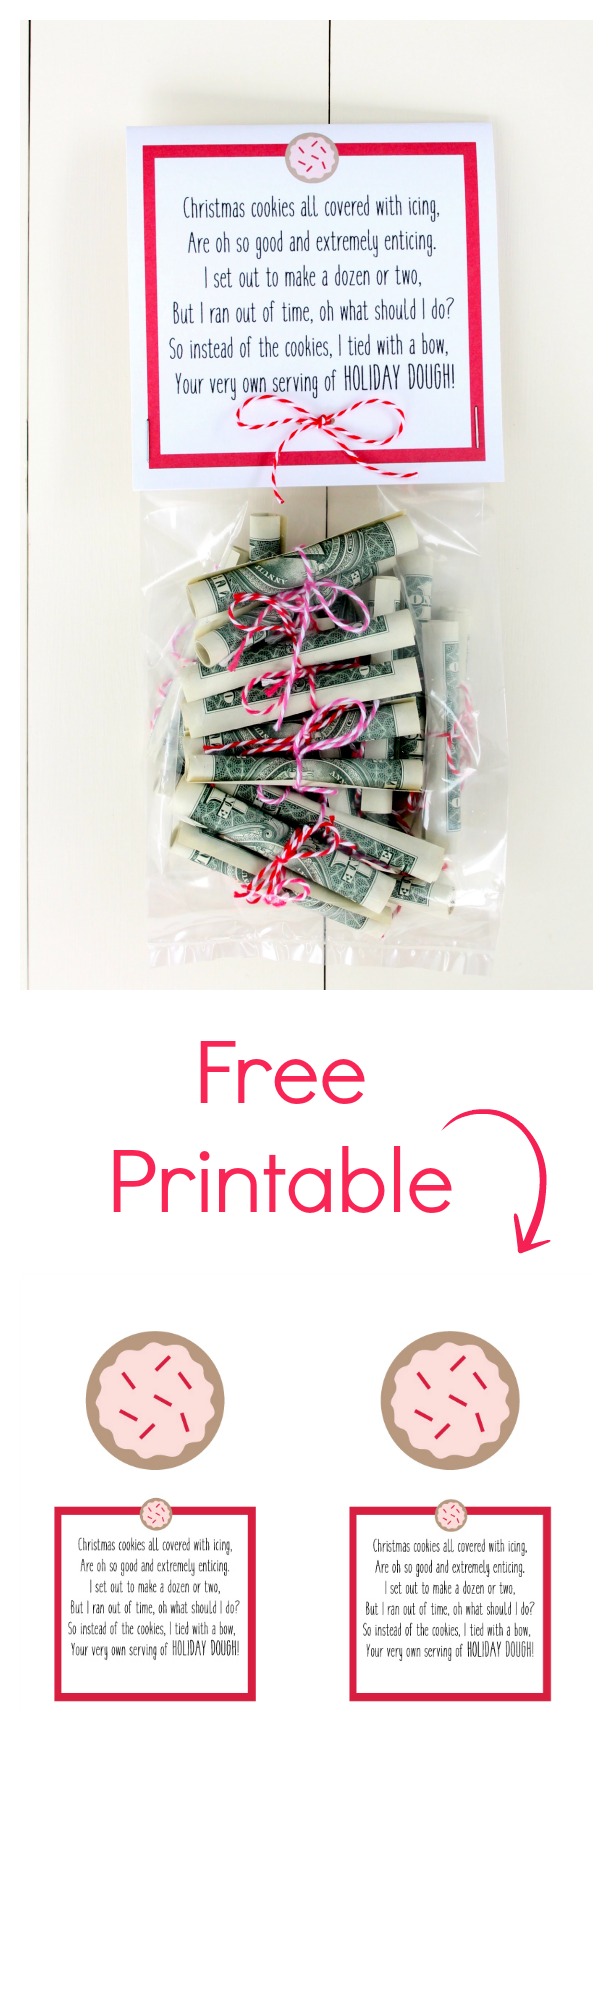 Christmas Money Free Printable. Fun way to give cash for Christmas.